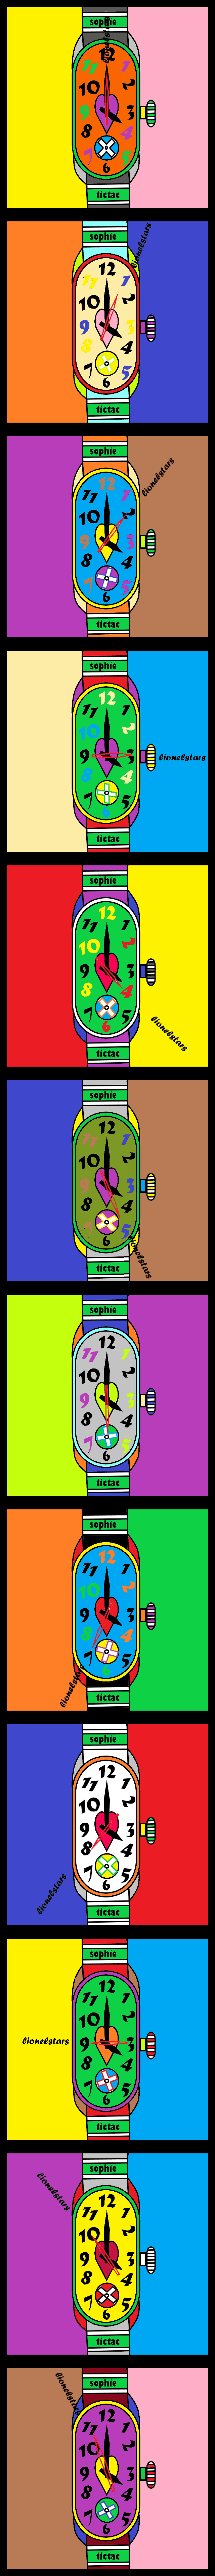 la montre sophie#1